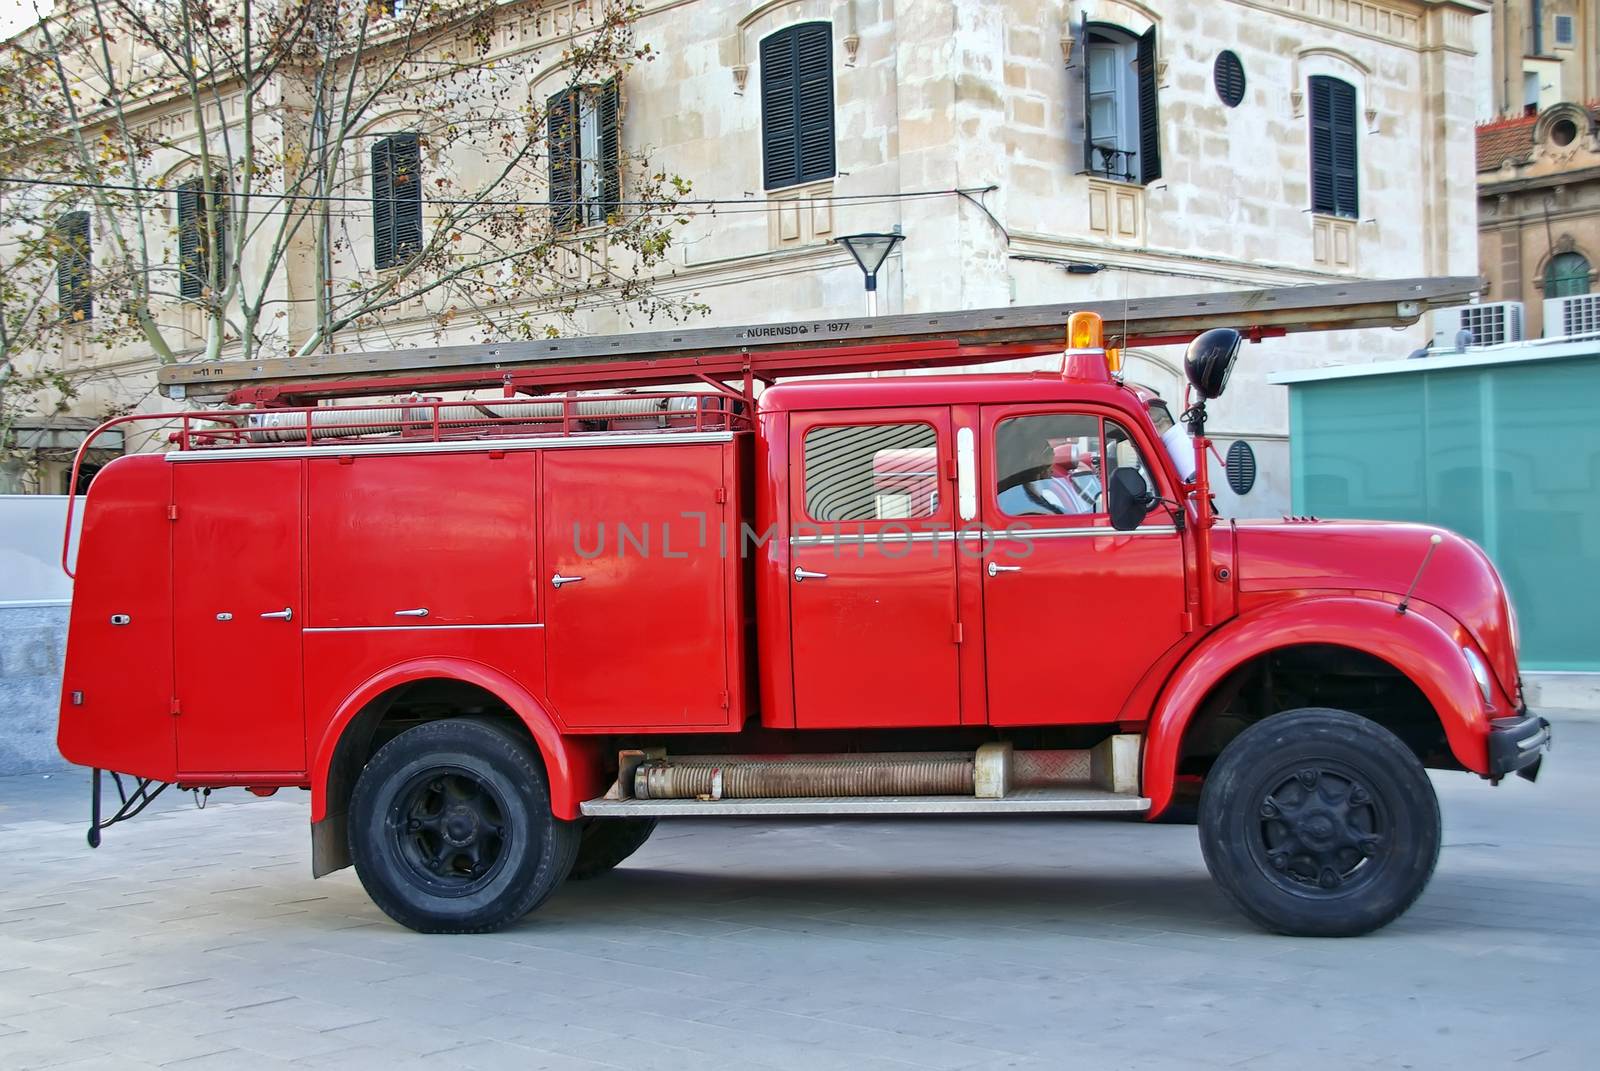 Firemen Truck by JCVSTOCK